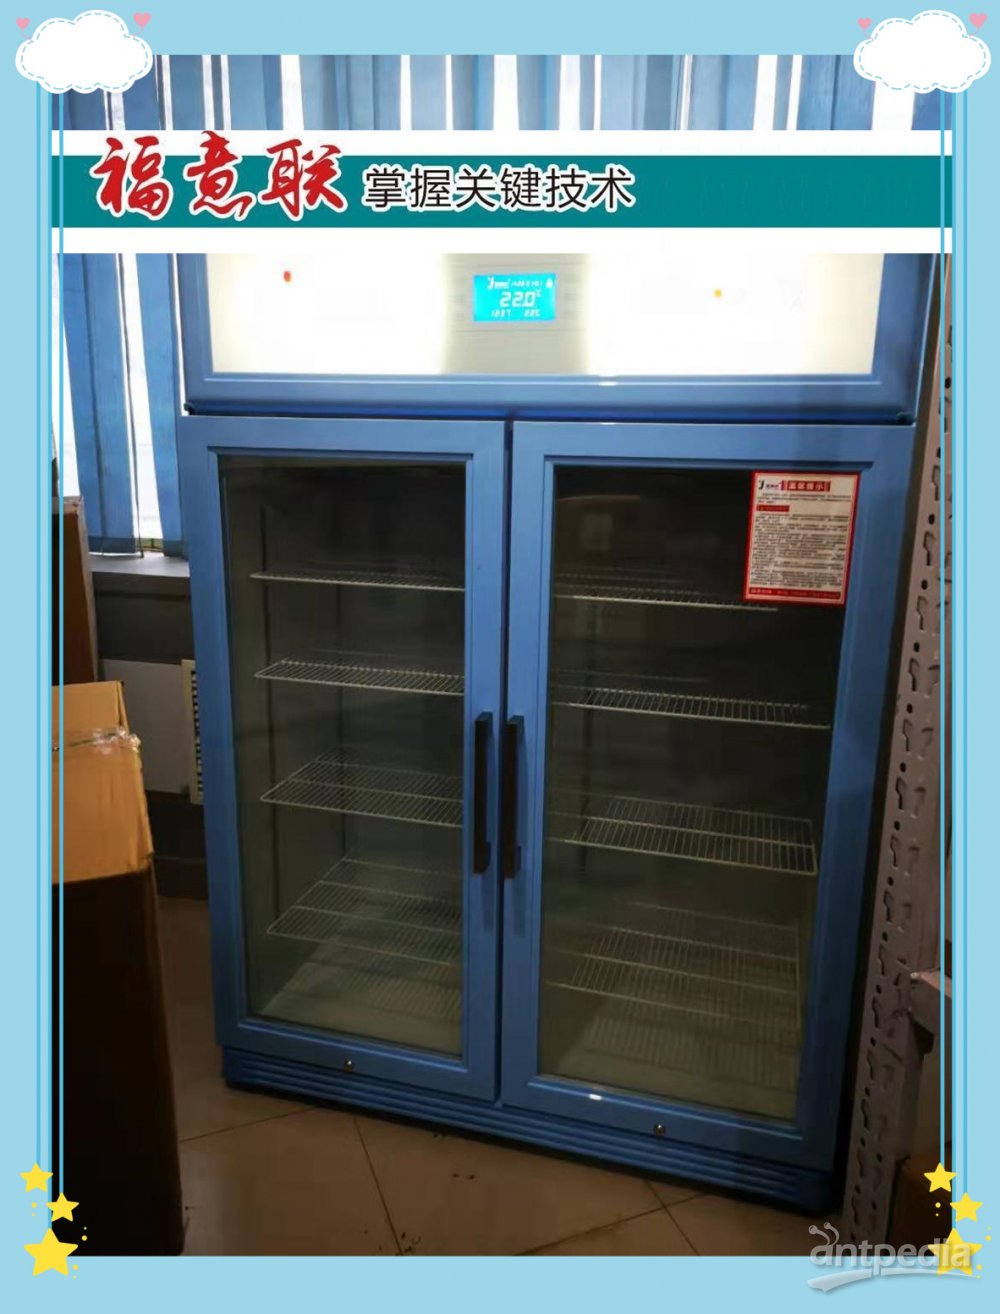 介入治疗保暖箱,型号FYL-YS-1028LD